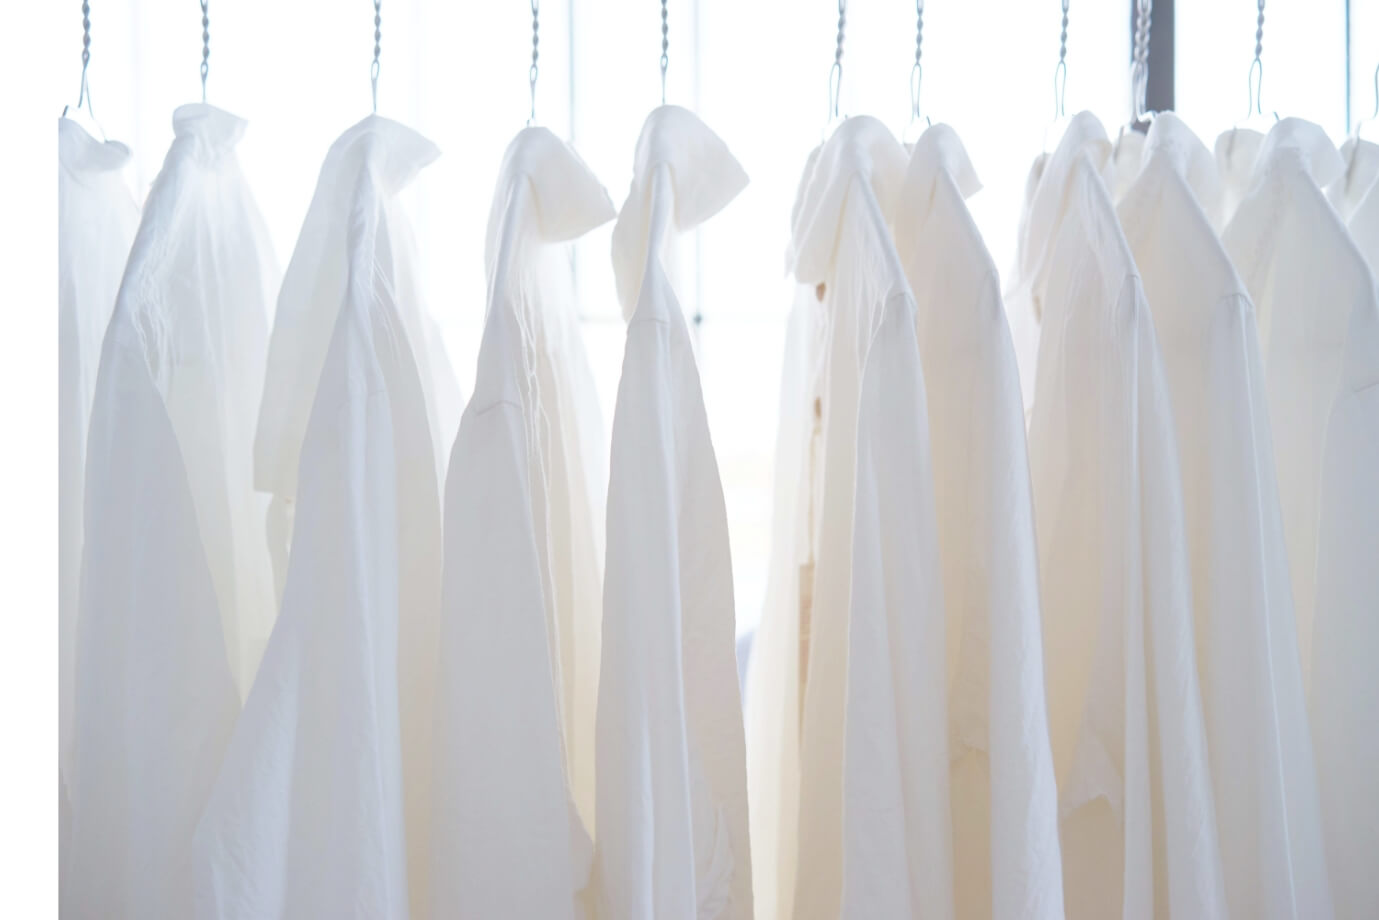 毎日白いシャツ続けて見えてくる白いシャツの彩り